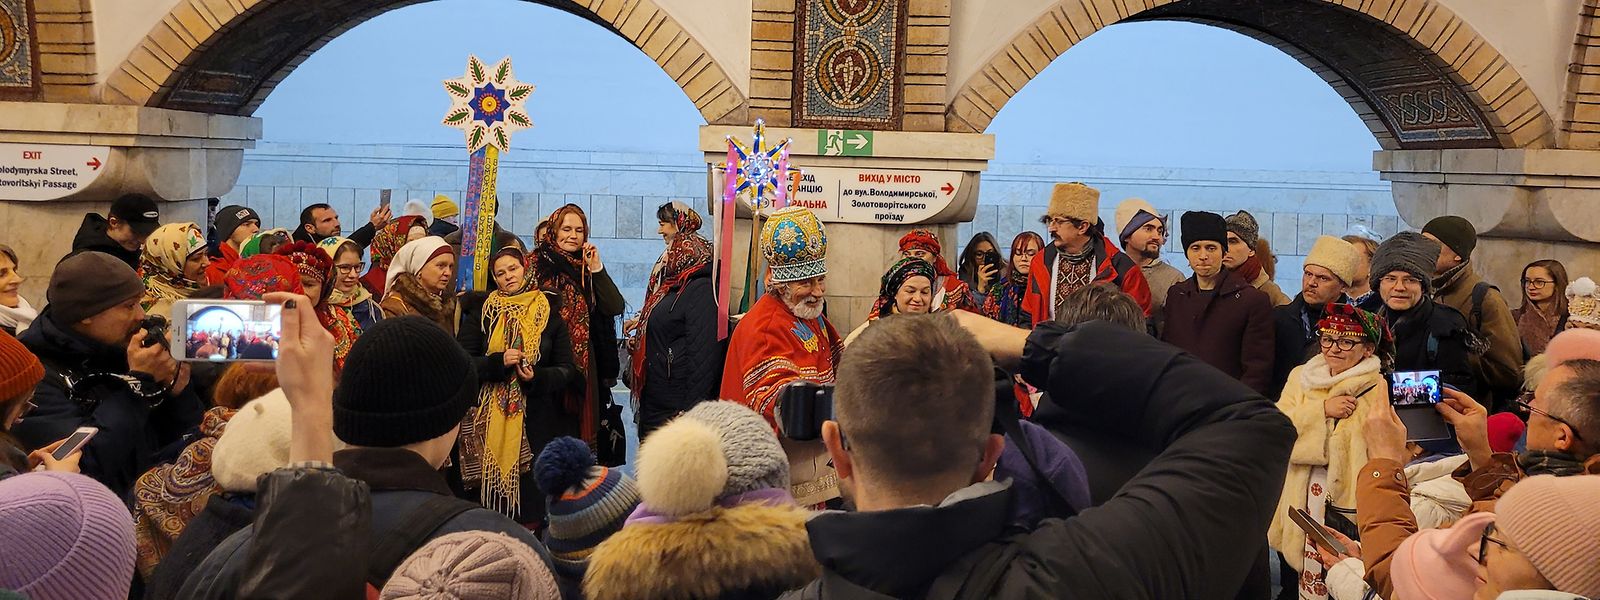 In der Metro sind am ersten Weihnachtstag Hunderte Einwohnerinnen und Einwohner von Kiew zusammengekommen, um Weihnachtslieder zu singen.